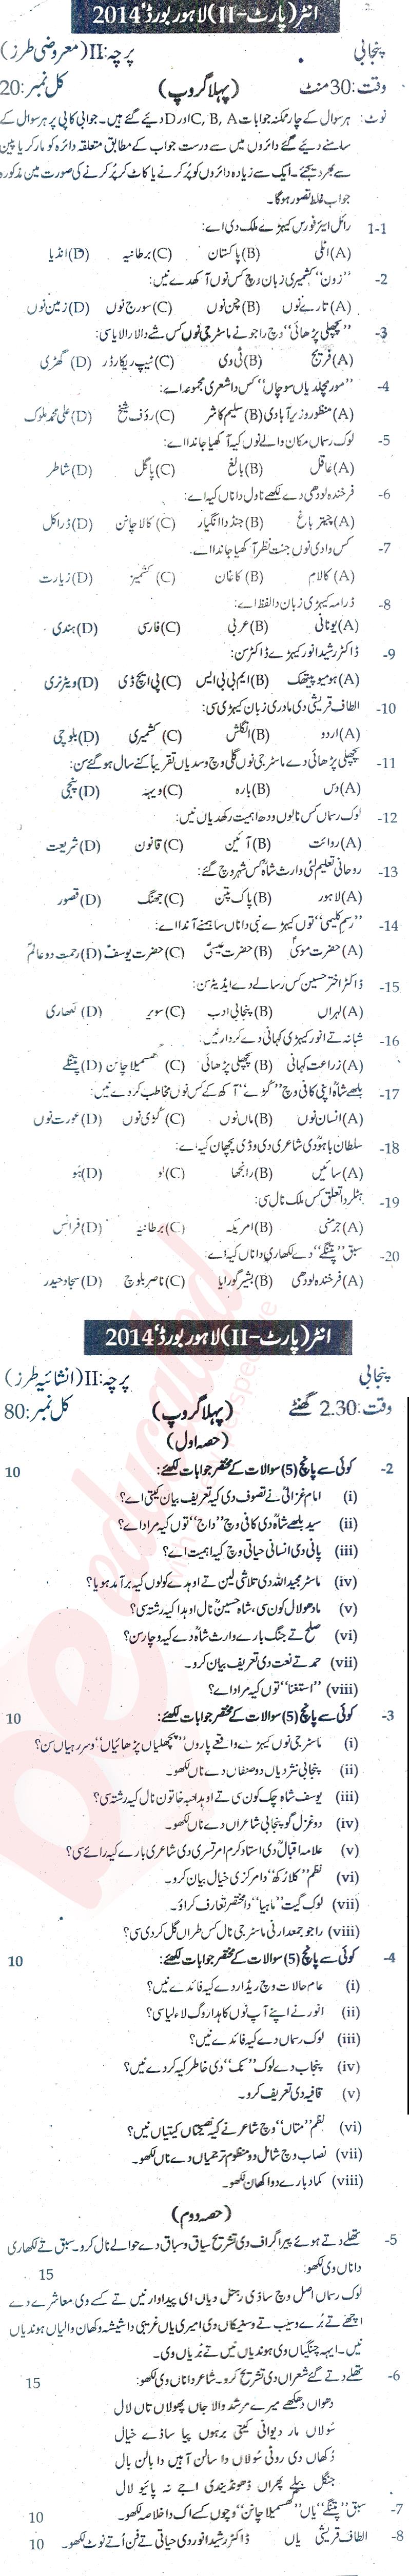 Punjabi FA Part 2 Past Paper Group 1 BISE Lahore 2014